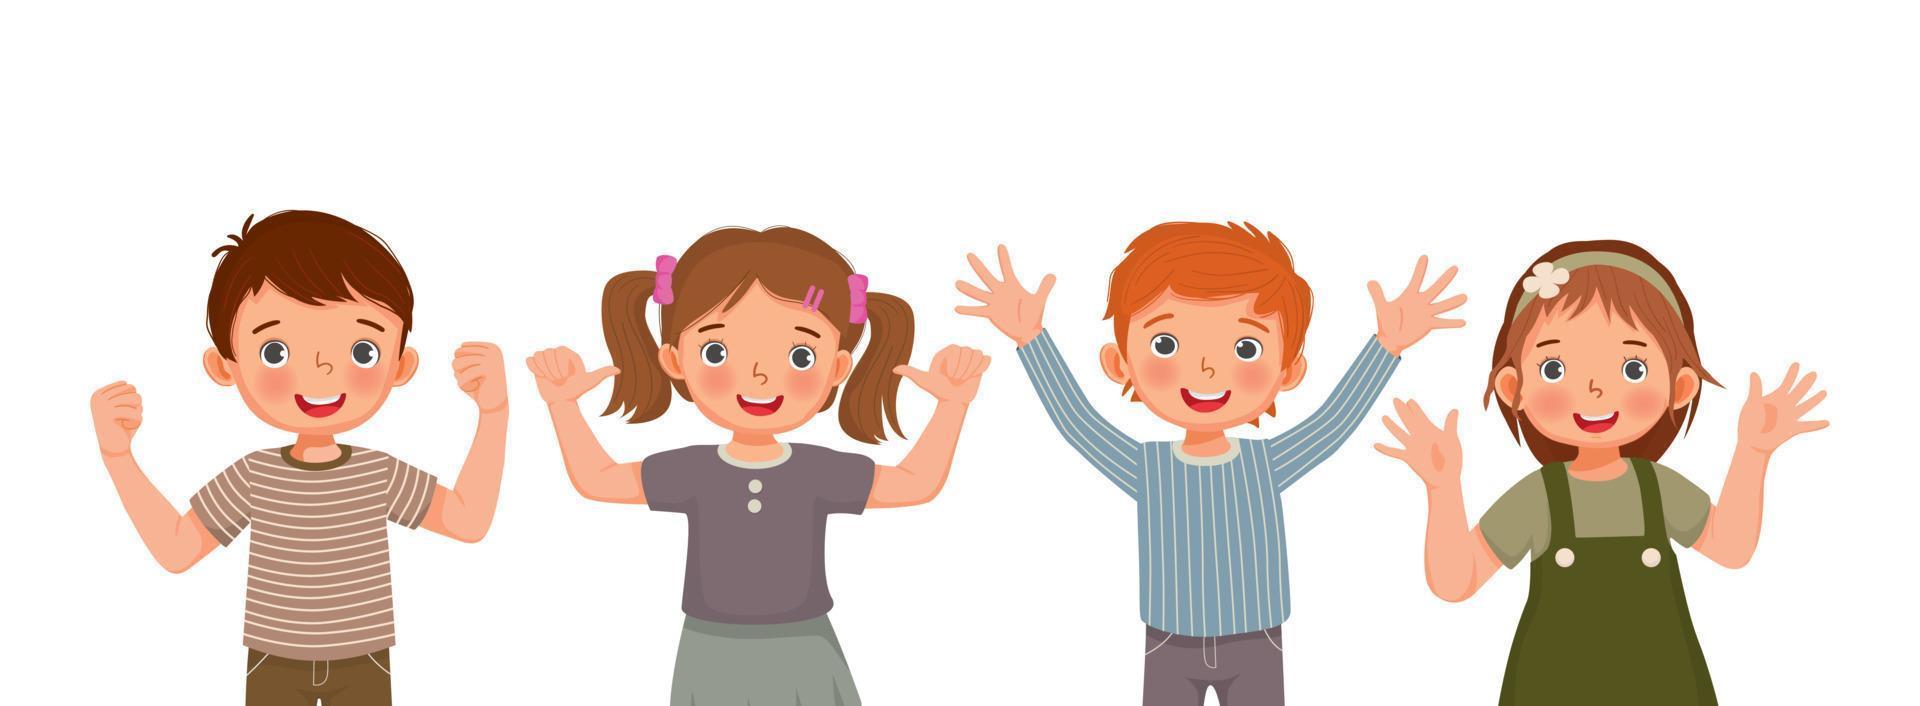 grupp glada barn med olika positiva känslor, känslor, upphetsade ansiktsuttryck, viftande handgester med tummen upp, såsom framgång ja-tecken, självförtroende och optimistiska kroppsspråk vektor